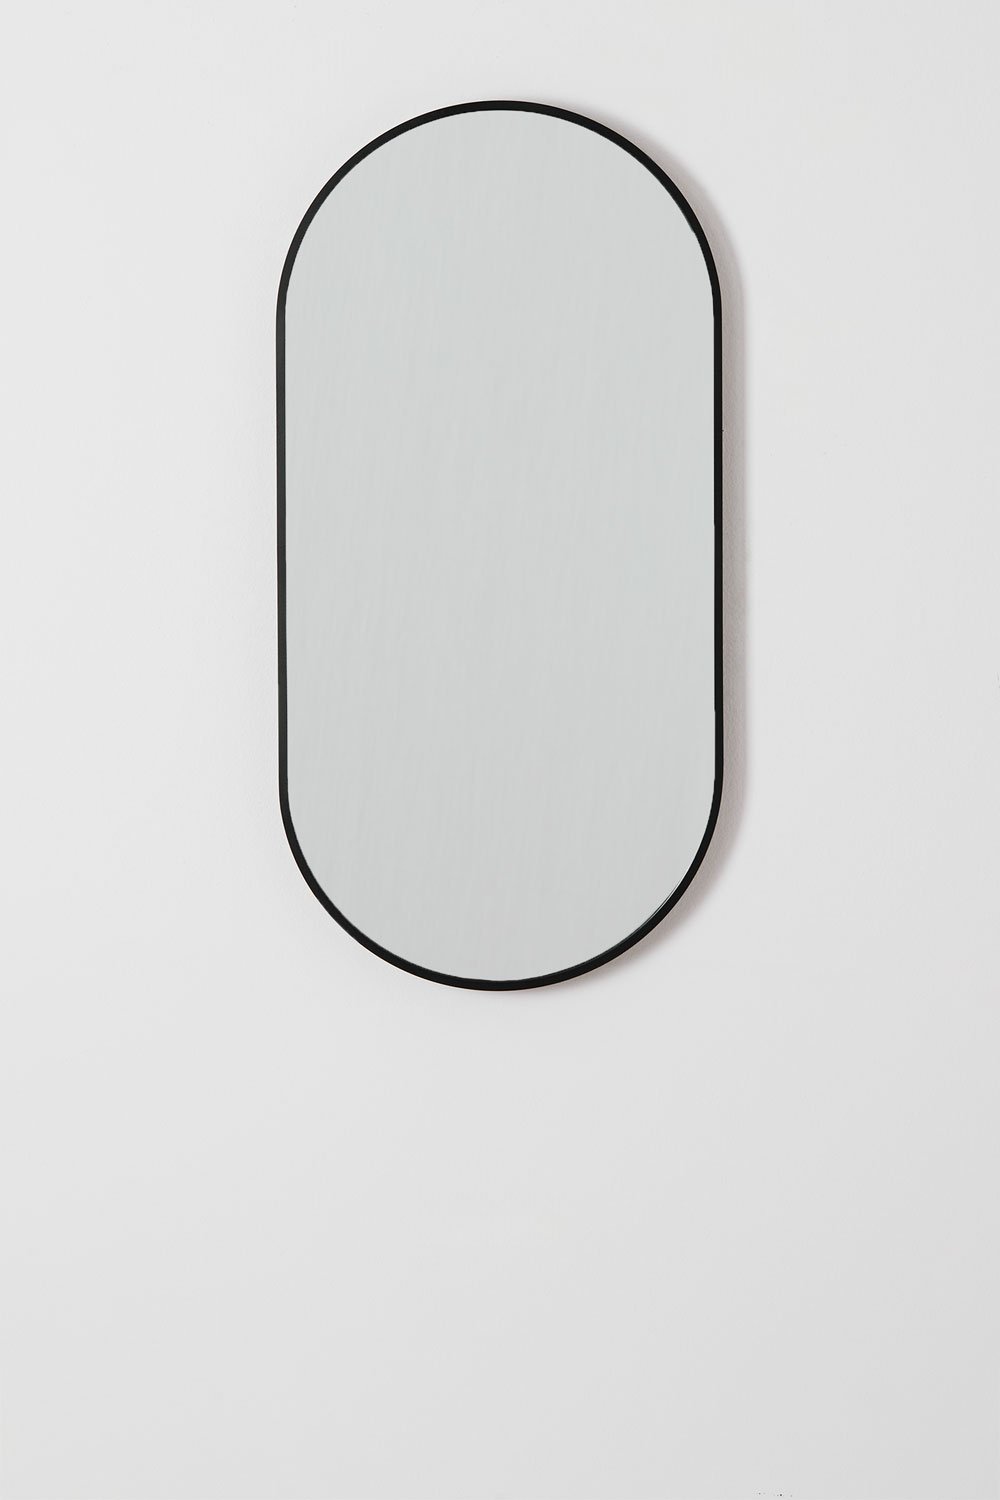 Specchio da parete ovale in alluminio (35x70 cm) Elbert, immagine della galleria 2